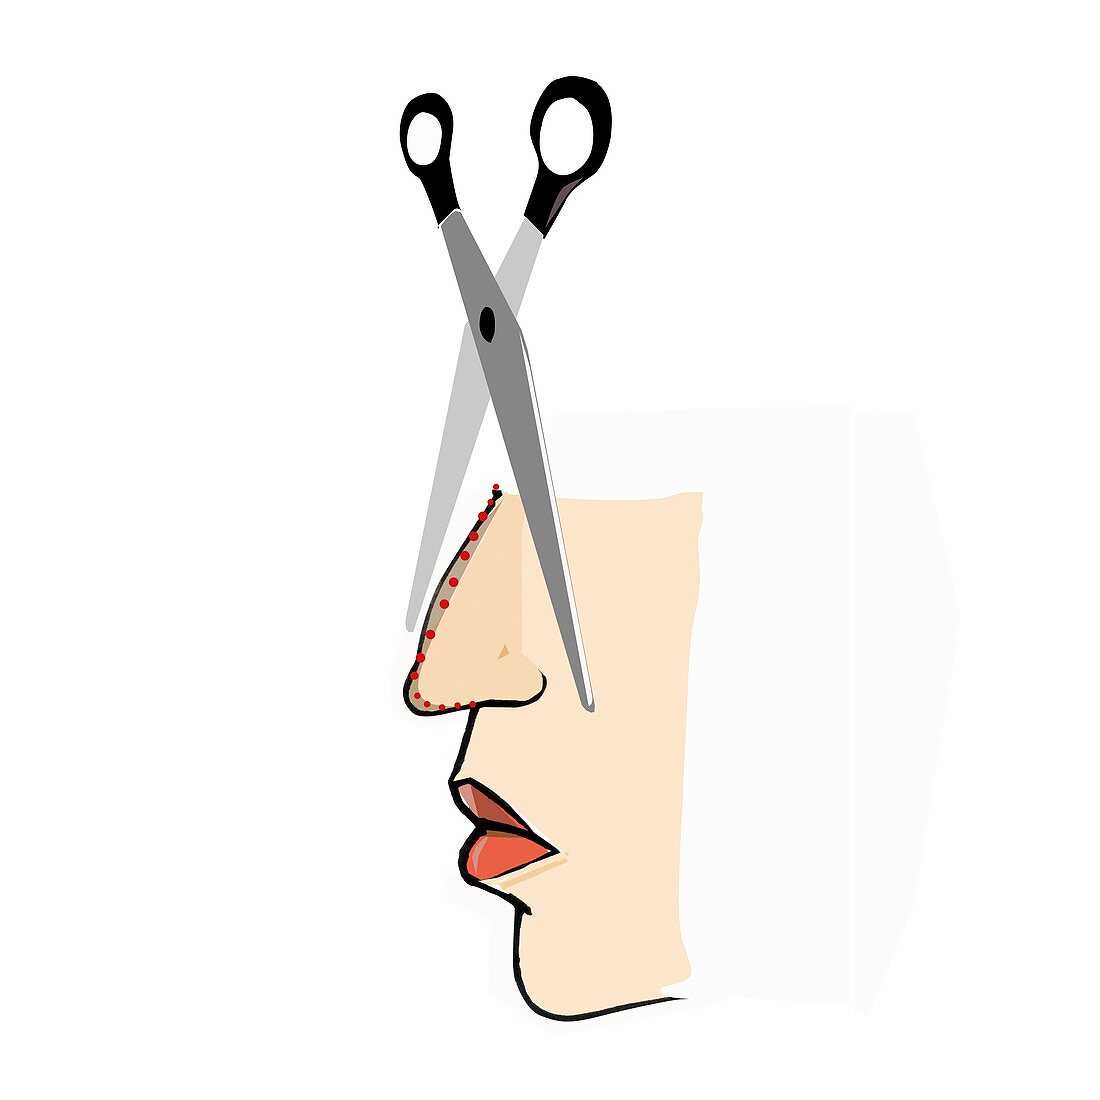 Cosmetic nose surgery,conceptual artwork